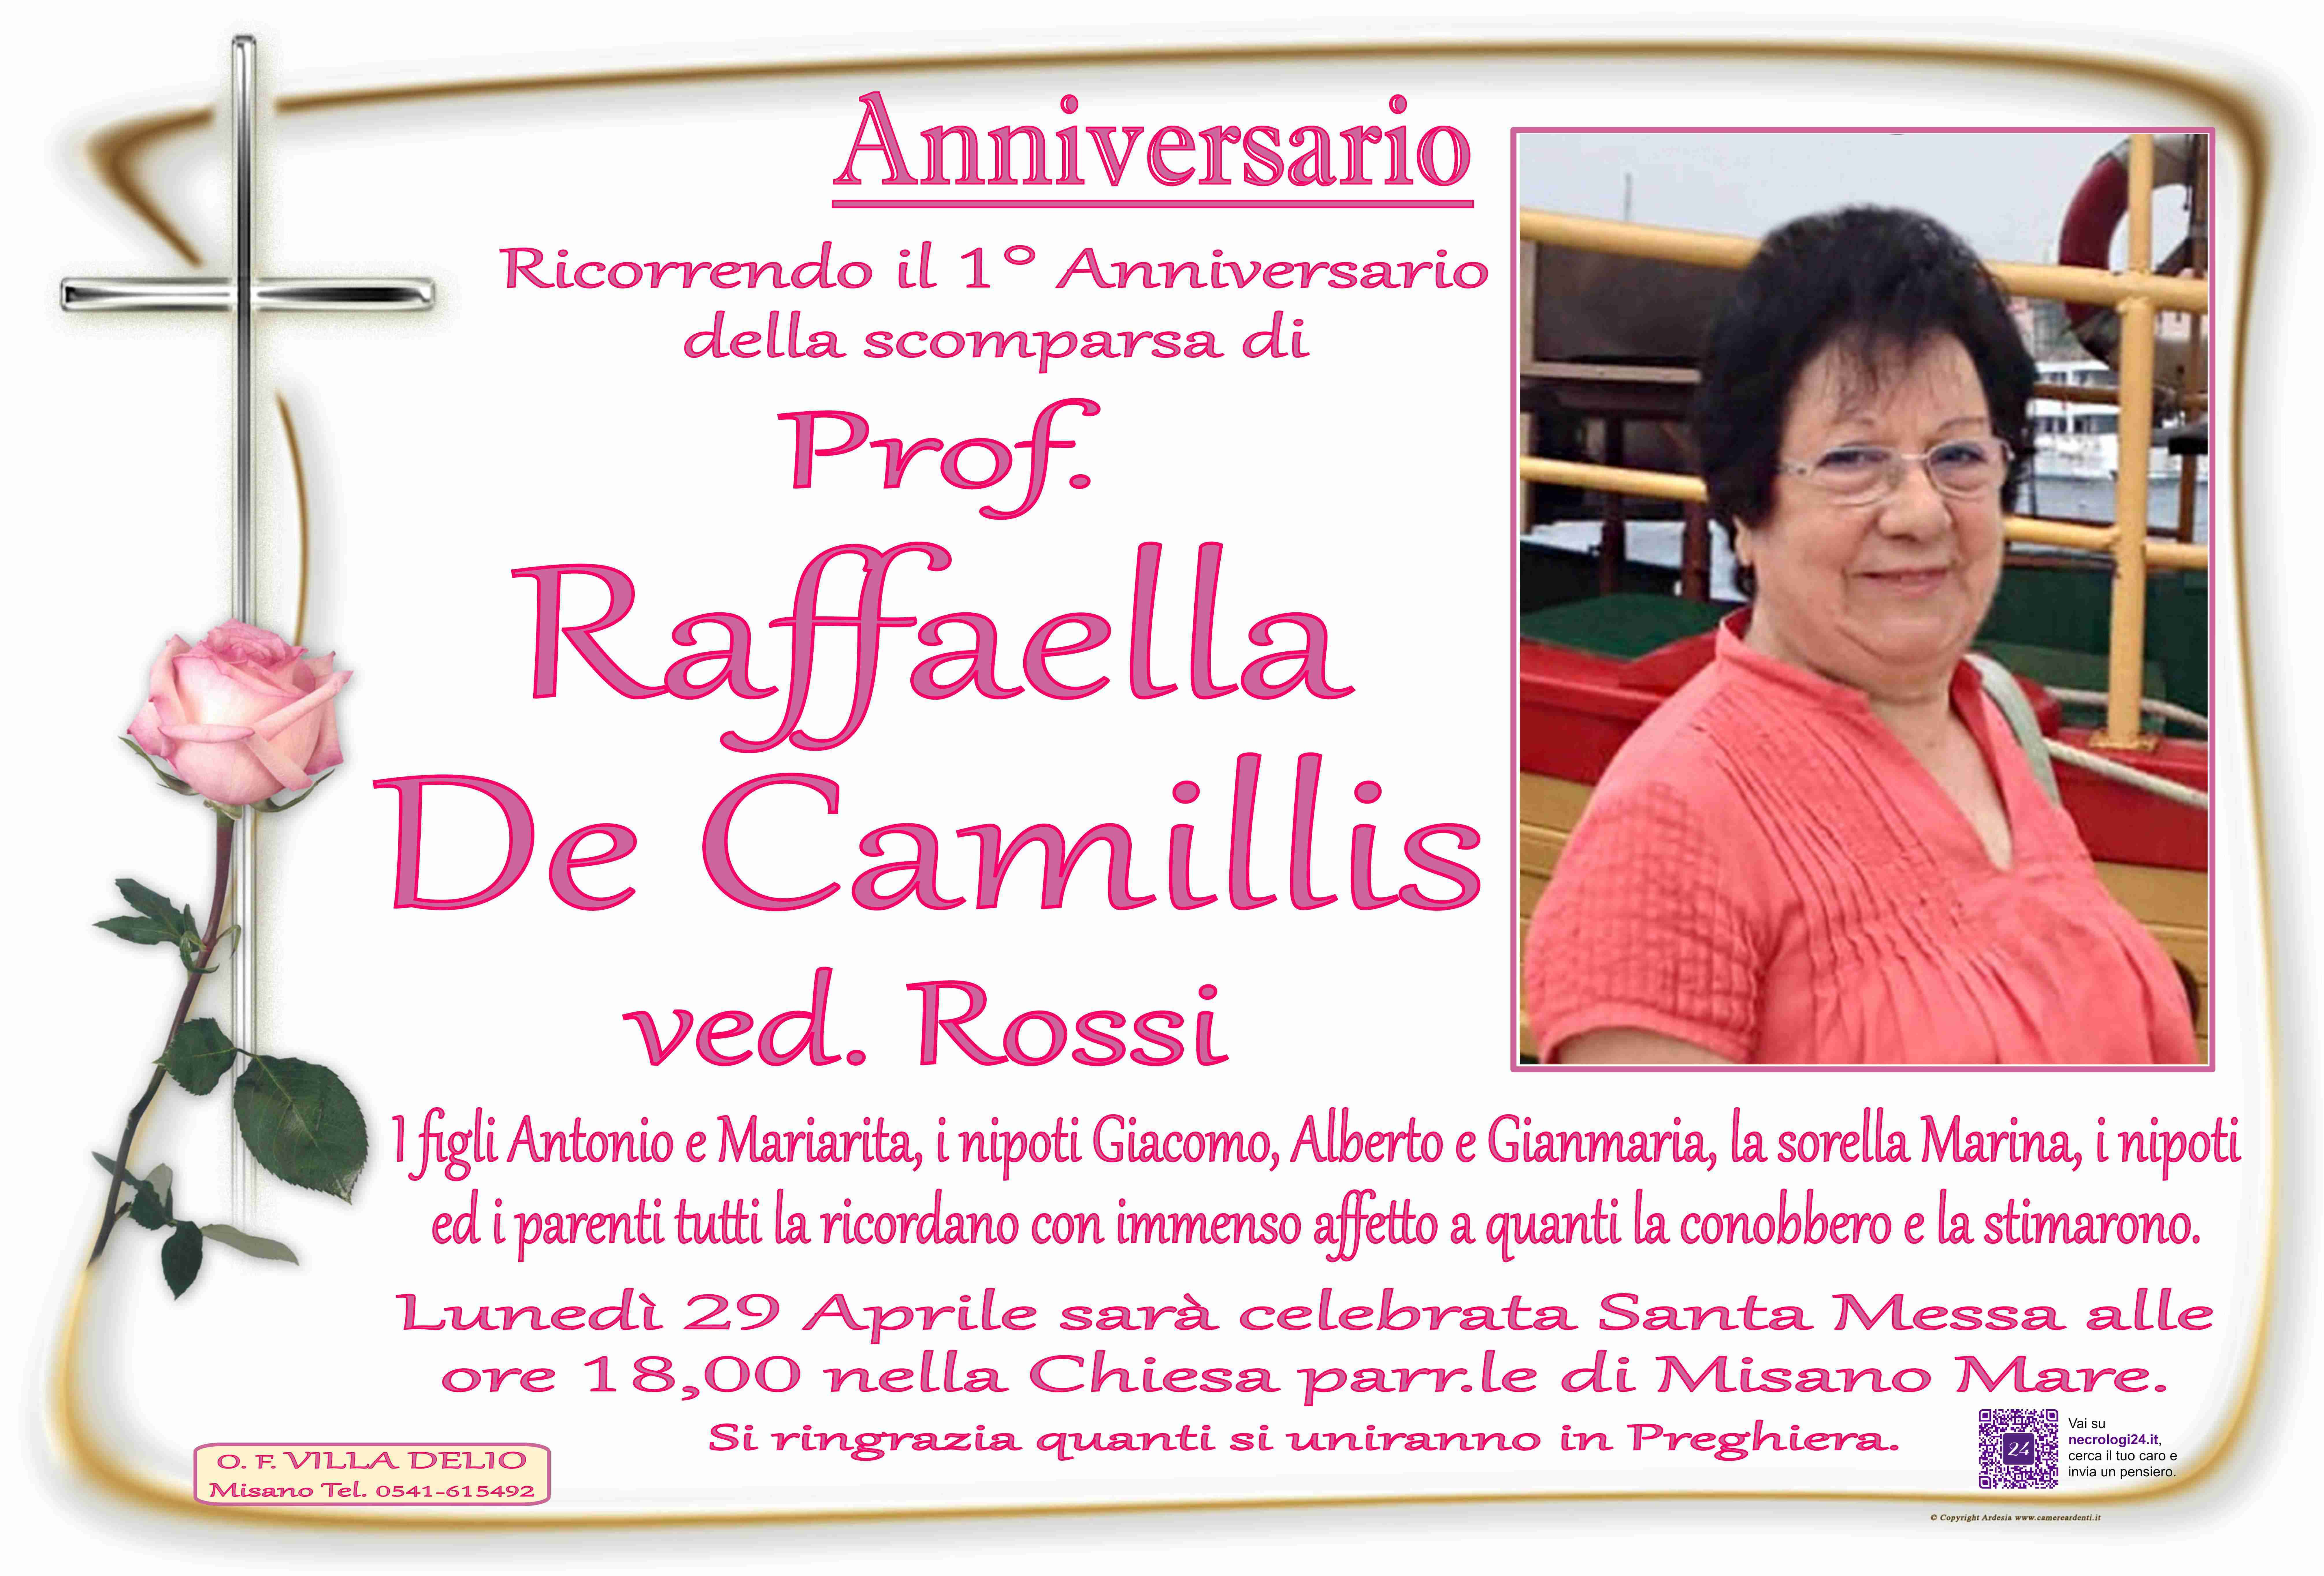 Prof. De Camillis Raffaella ved. Rossi